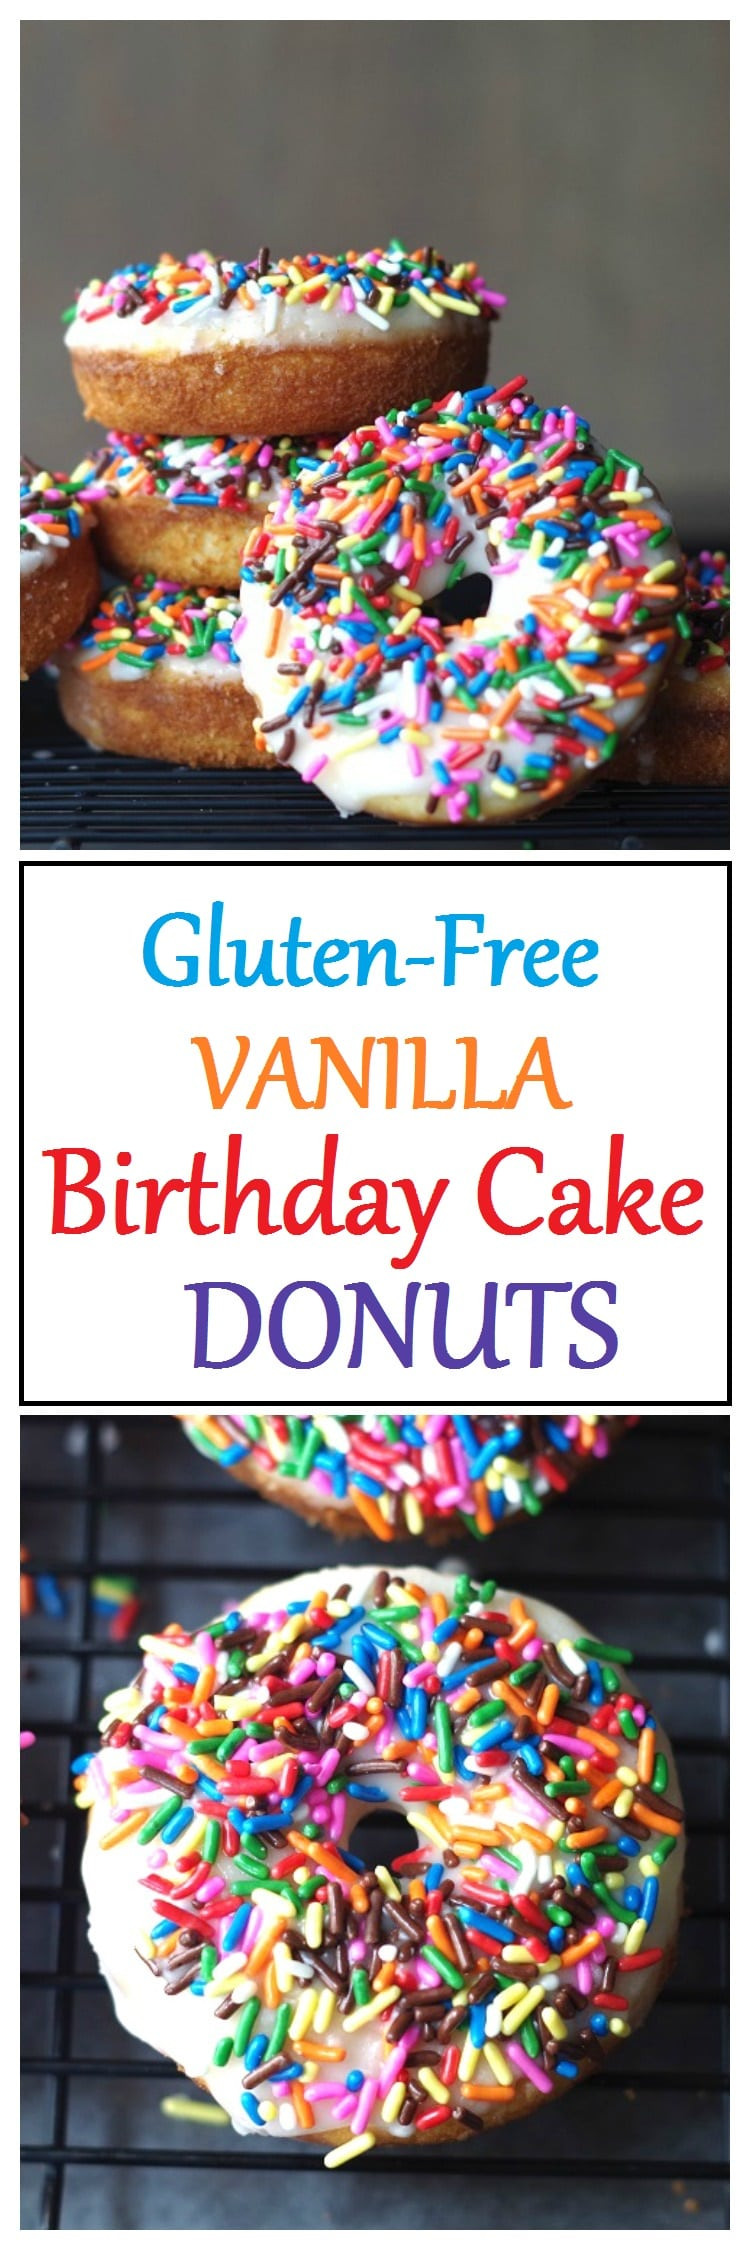 Best ideas about Gluten Free Birthday Cake
. Save or Pin Gluten Free Vanilla Birthday Cake Donuts Now.